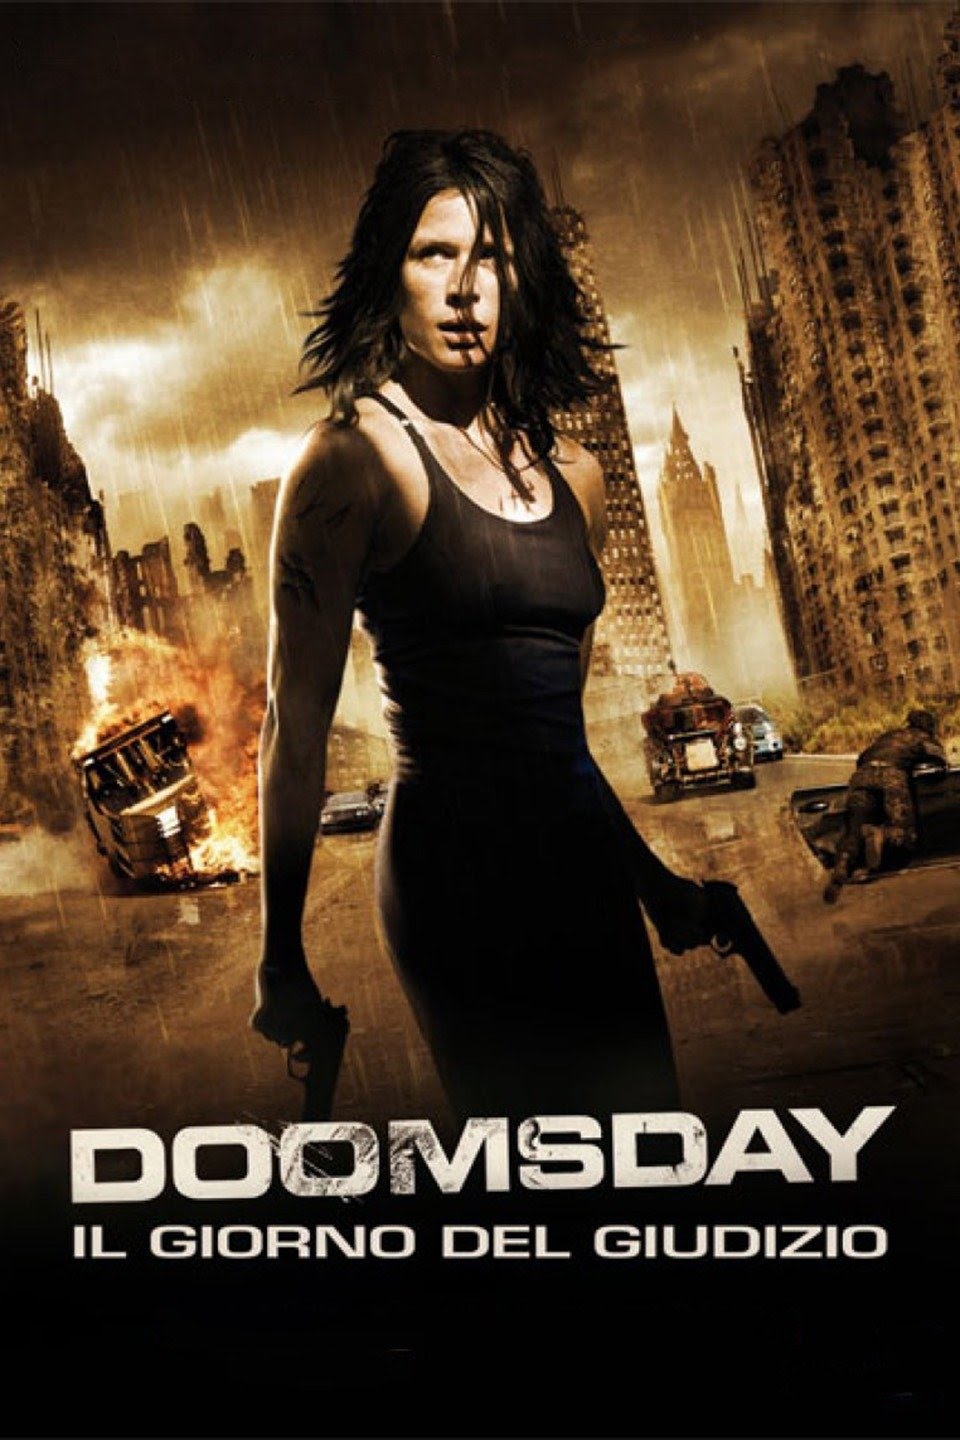 Doomsday – Il giorno del Giudizio [HD] (2008)